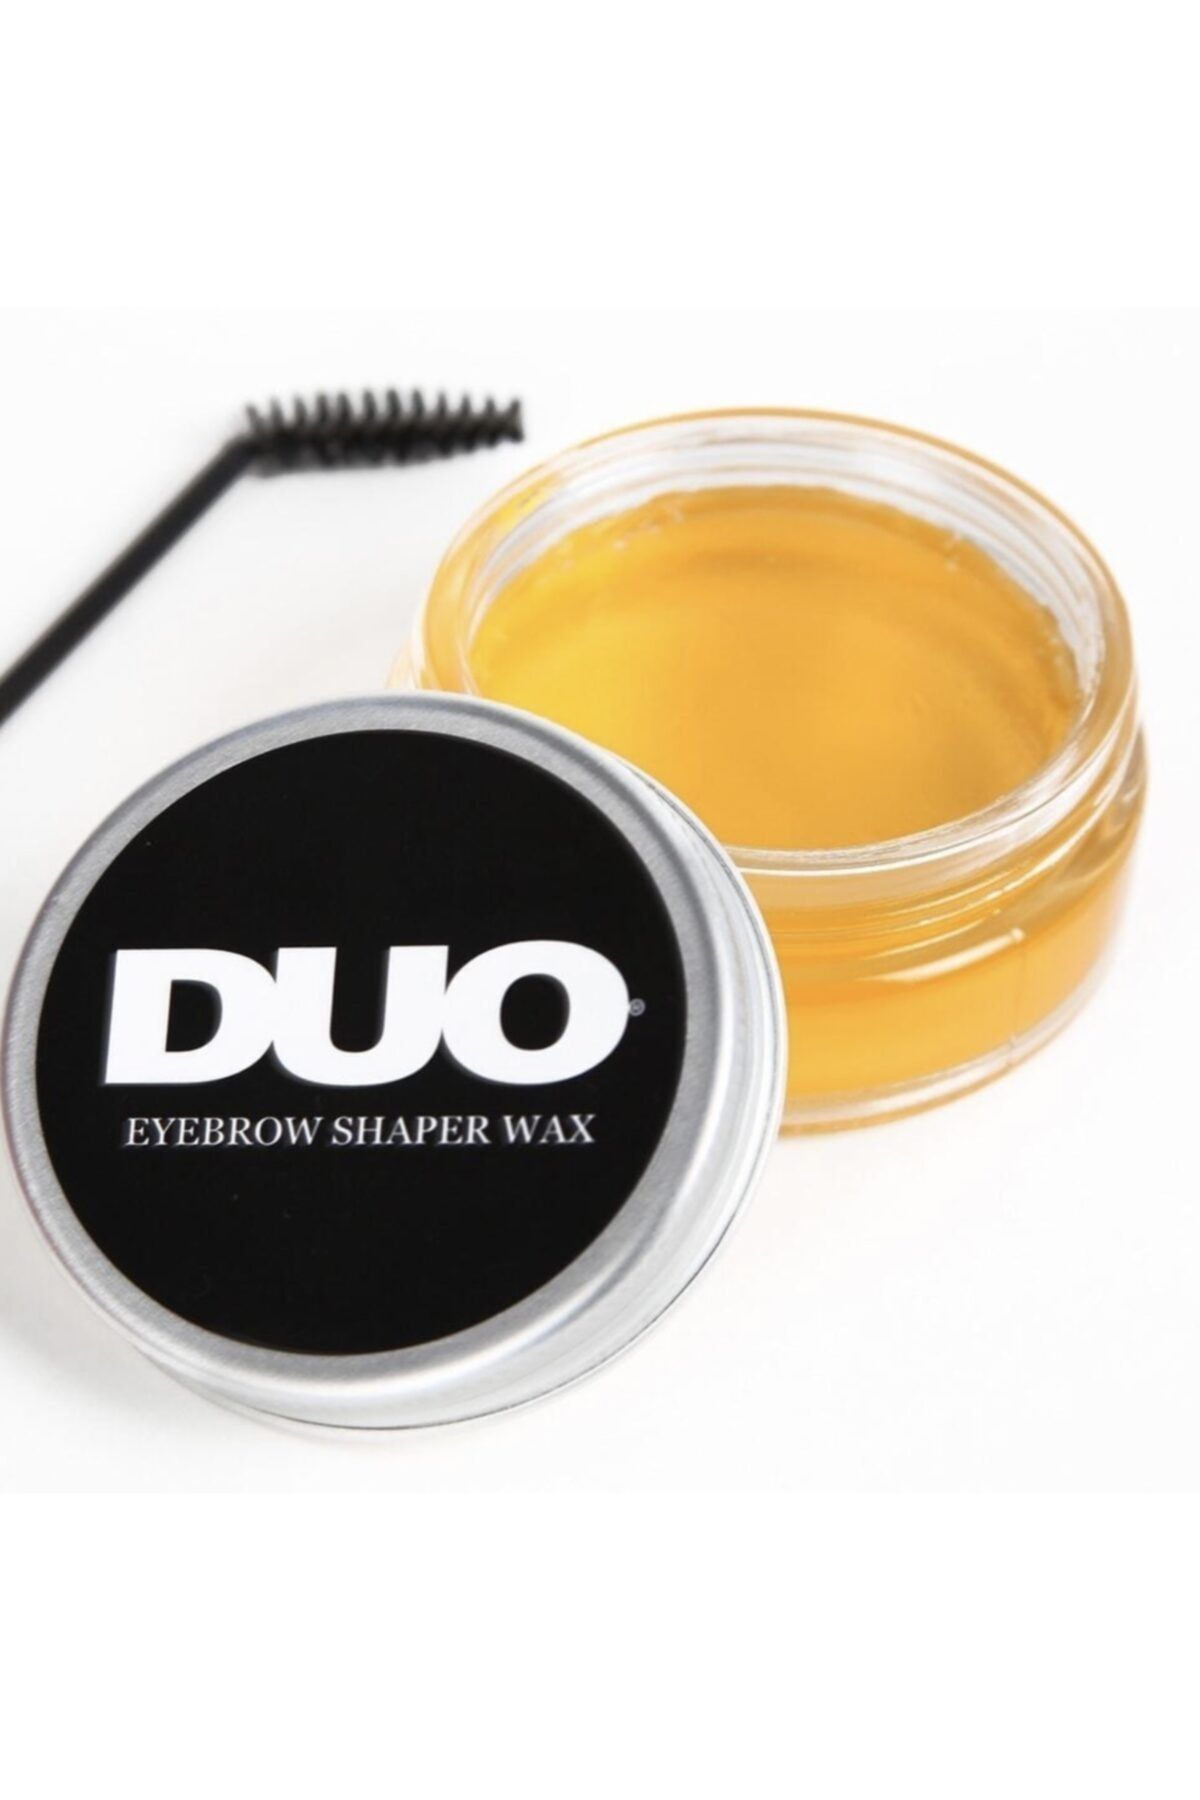 Duo Eyebrow Shaper Wax 50 ml Argan-keratin-almond Yağları -e,b Vitaminleriyle Şekillendirir